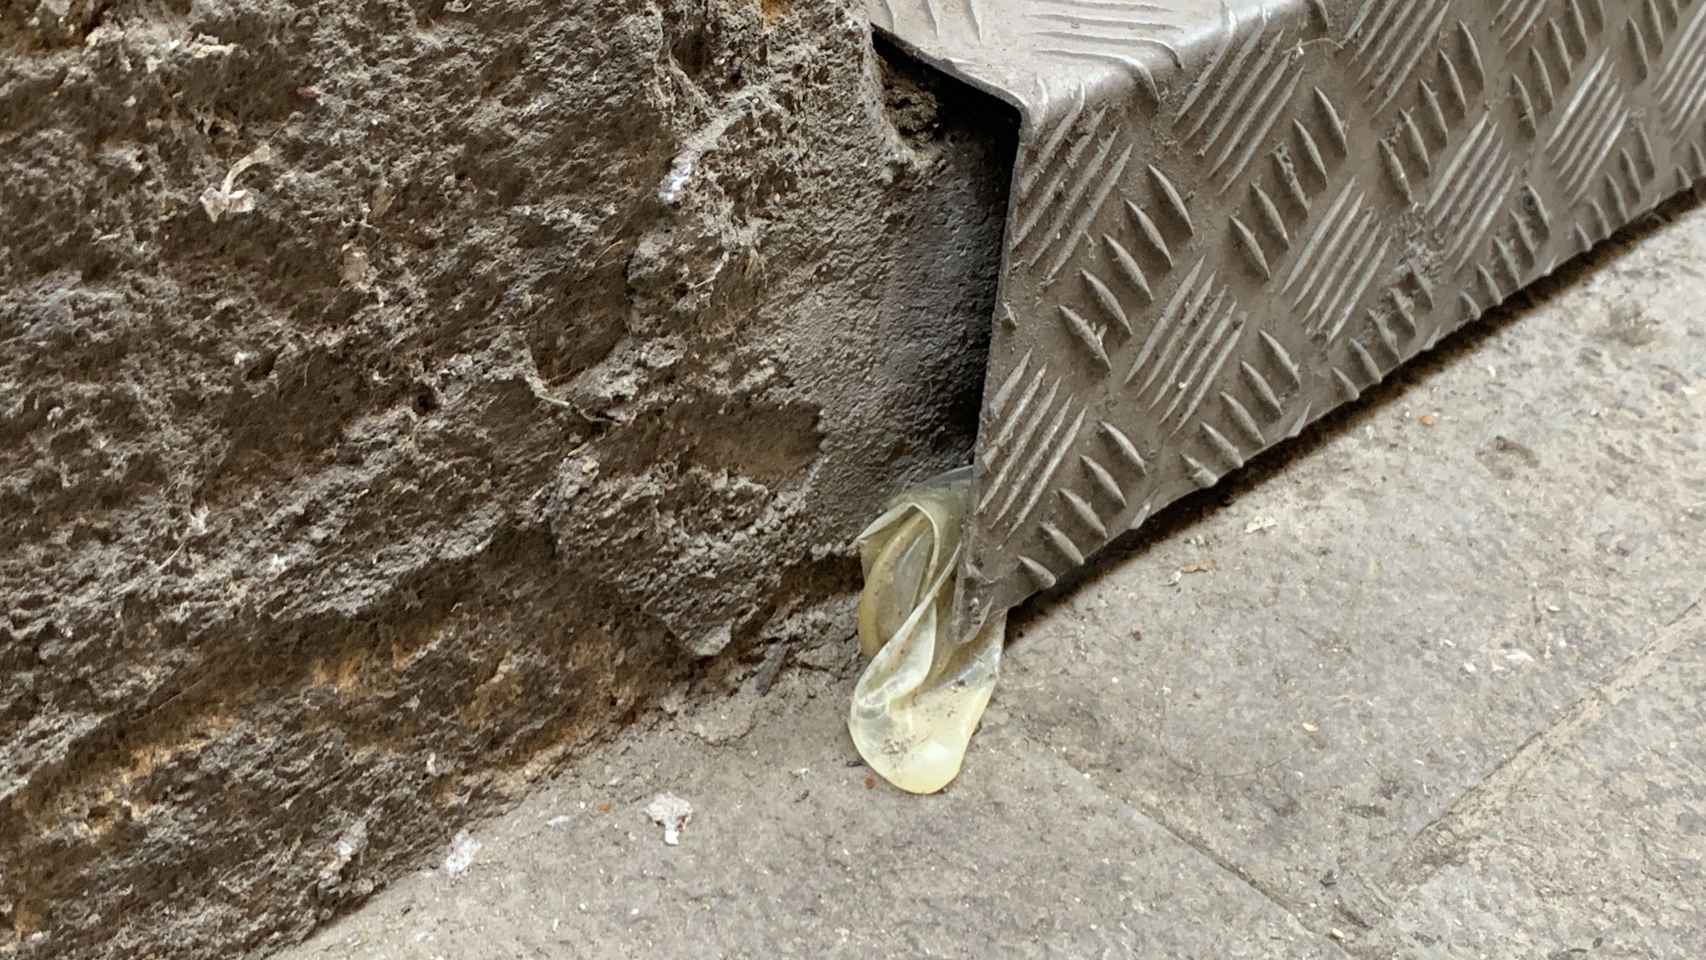 Uno de los tantos condones desperdigados fruto de la prostitución en esta calle de Barcelona / V. M.